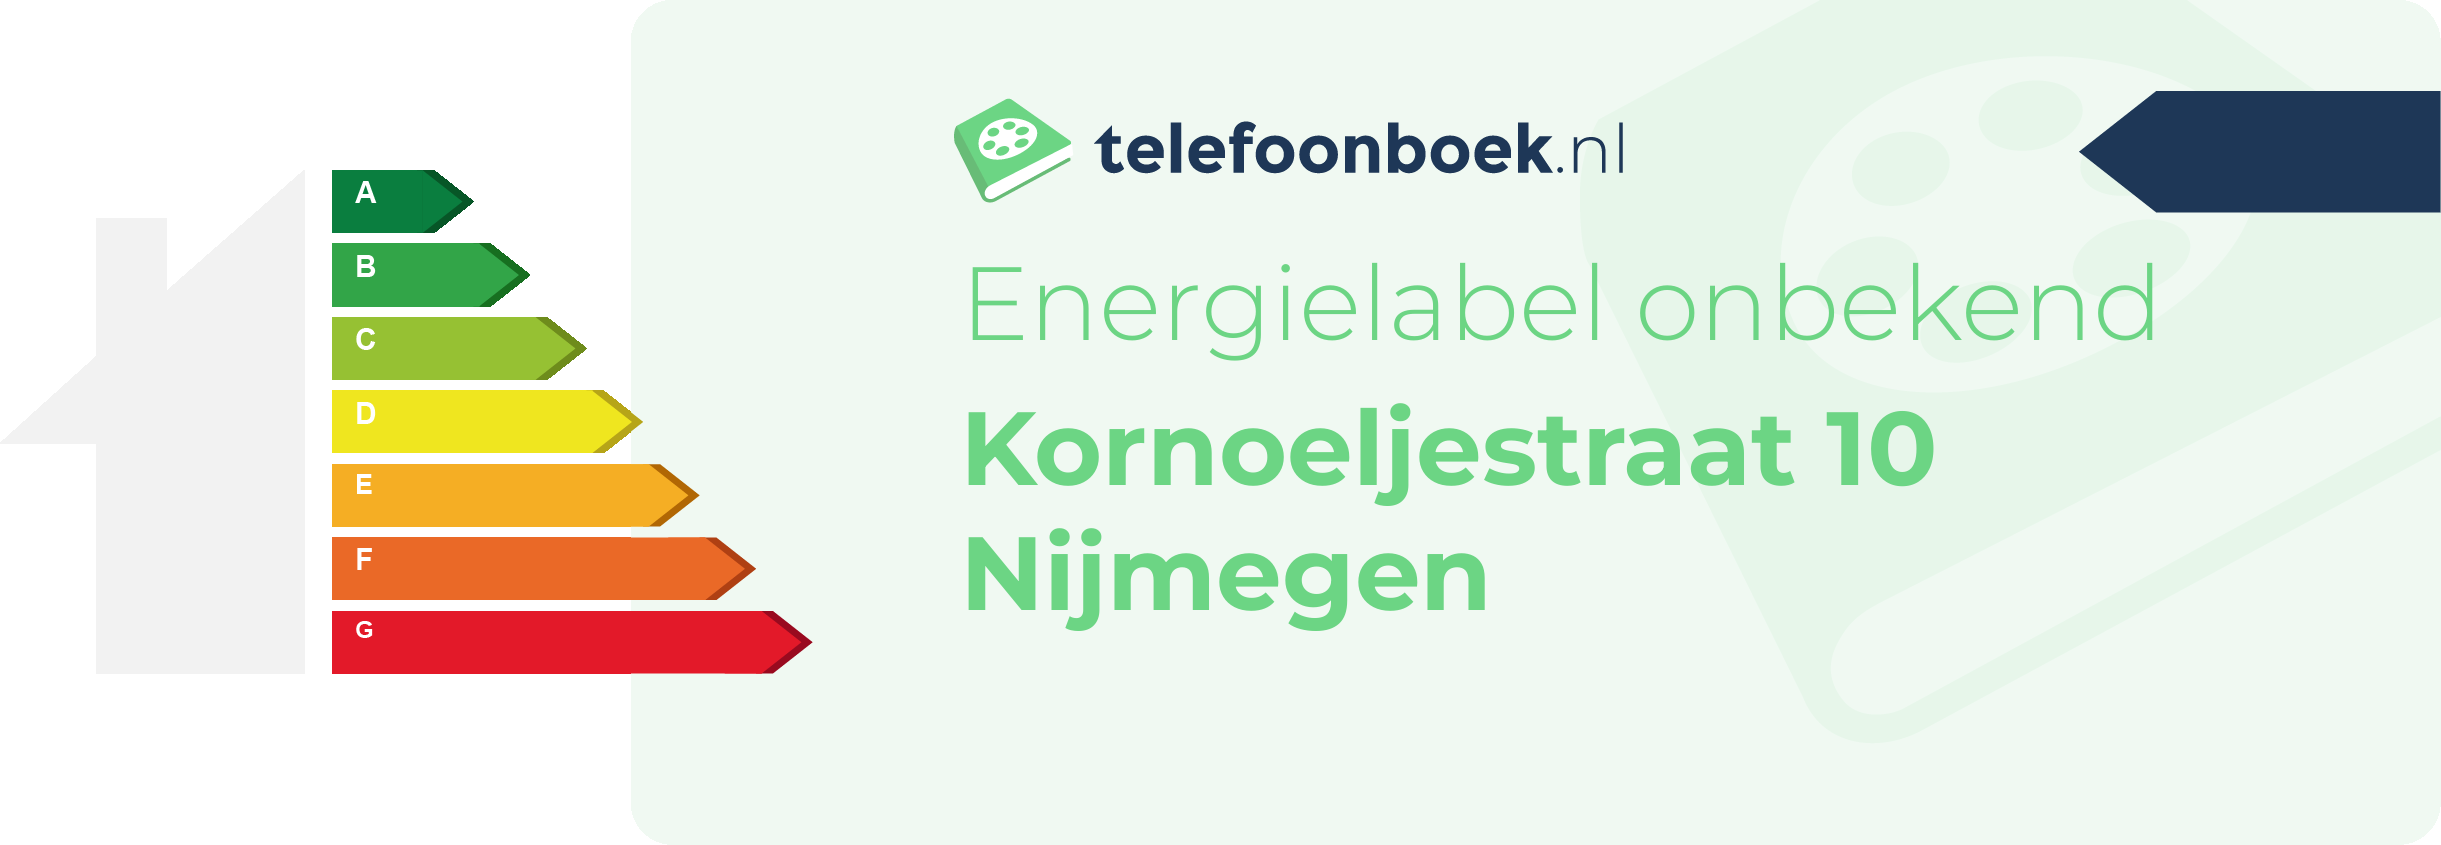 Energielabel Kornoeljestraat 10 Nijmegen